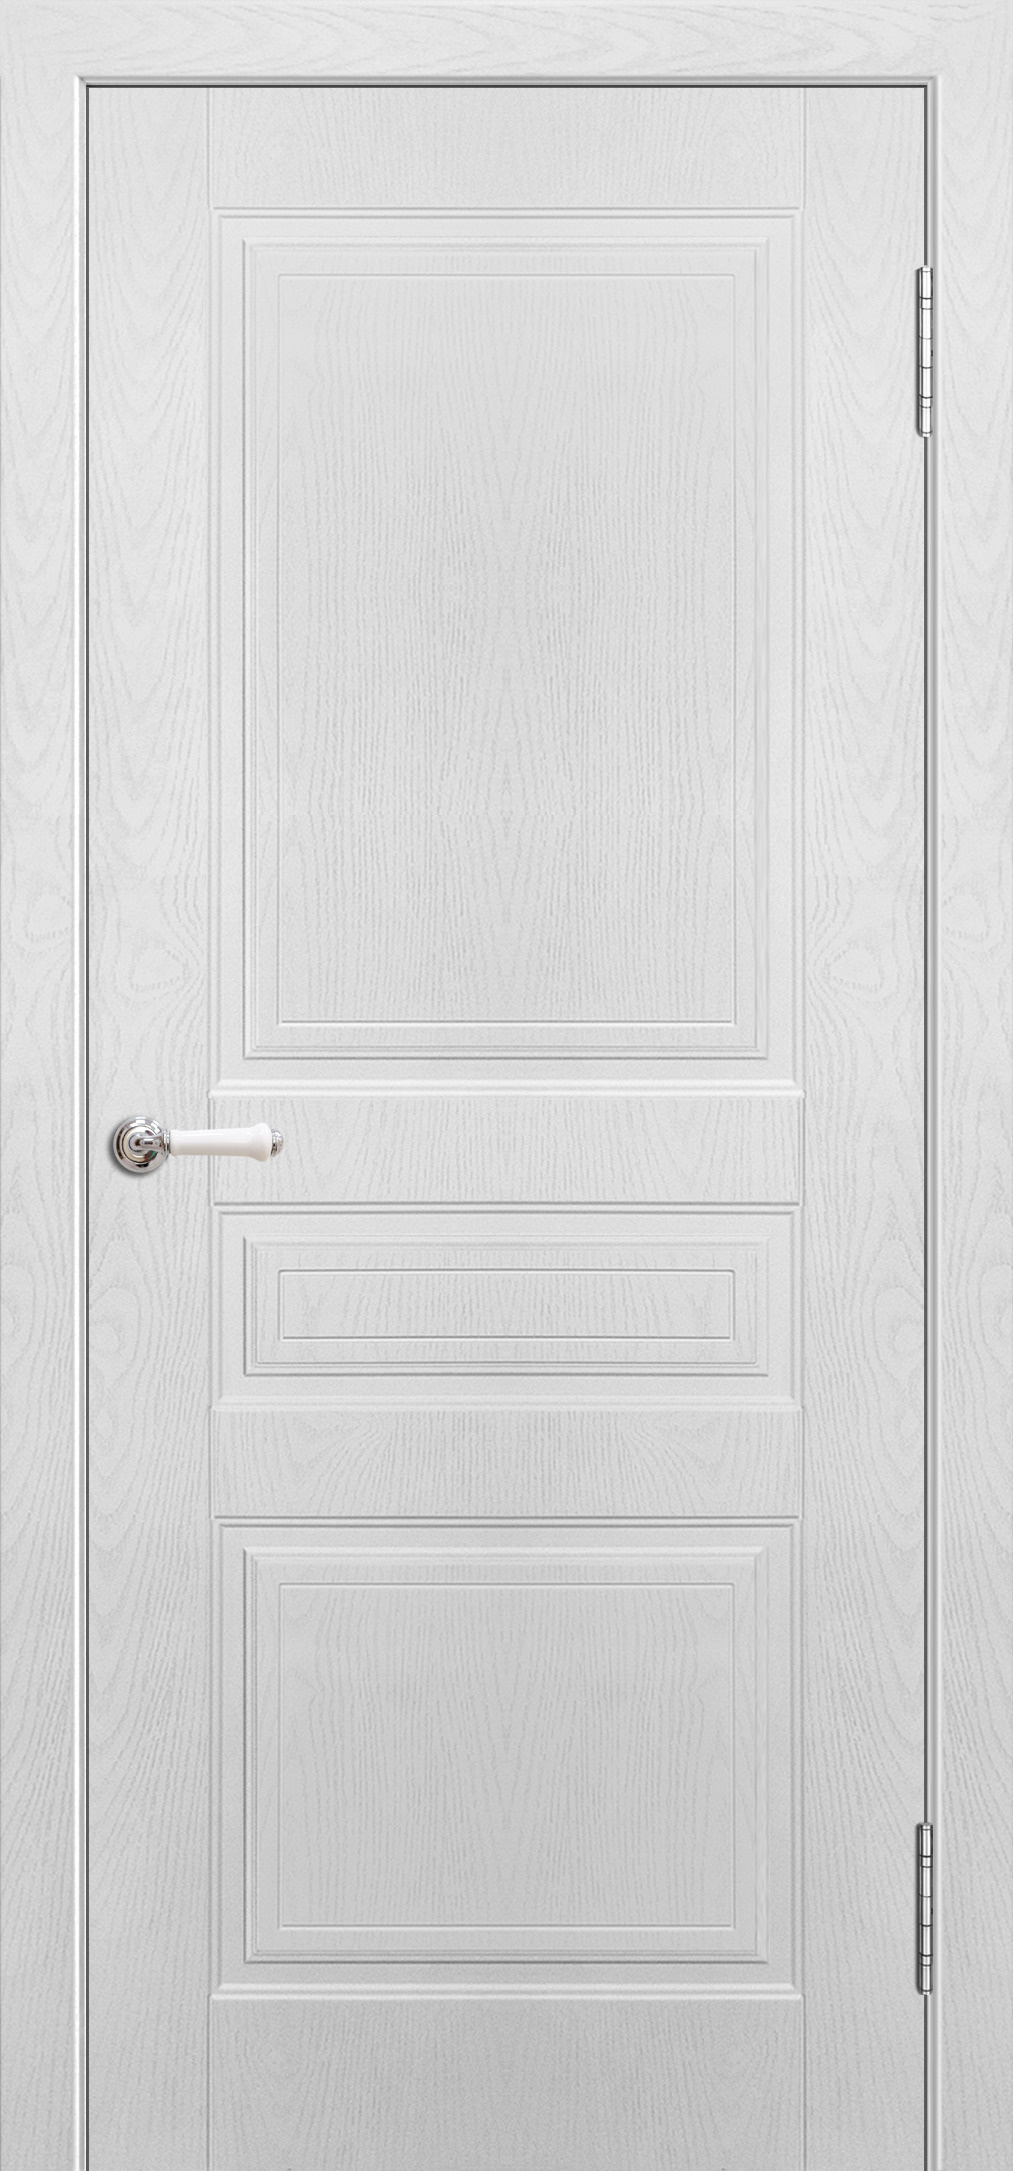 Cordondoor Межкомнатная дверь Султан ПГ, арт. 10625 - фото №1